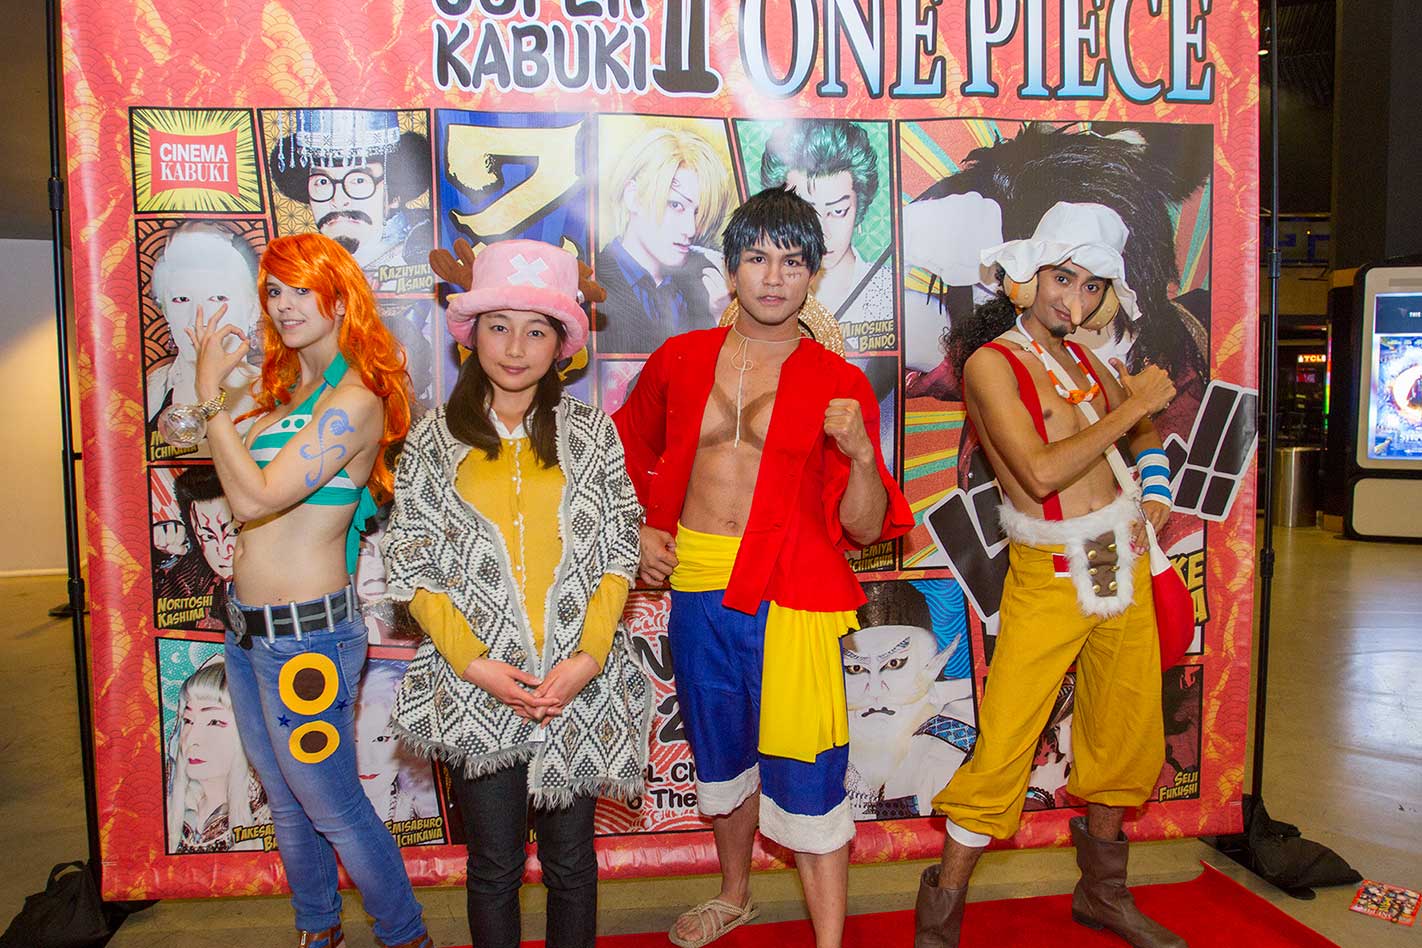 One Piece Kabuki U S Premier 熱狂 ワンピースがロスに 海外の反応 Miki Nomura Japan